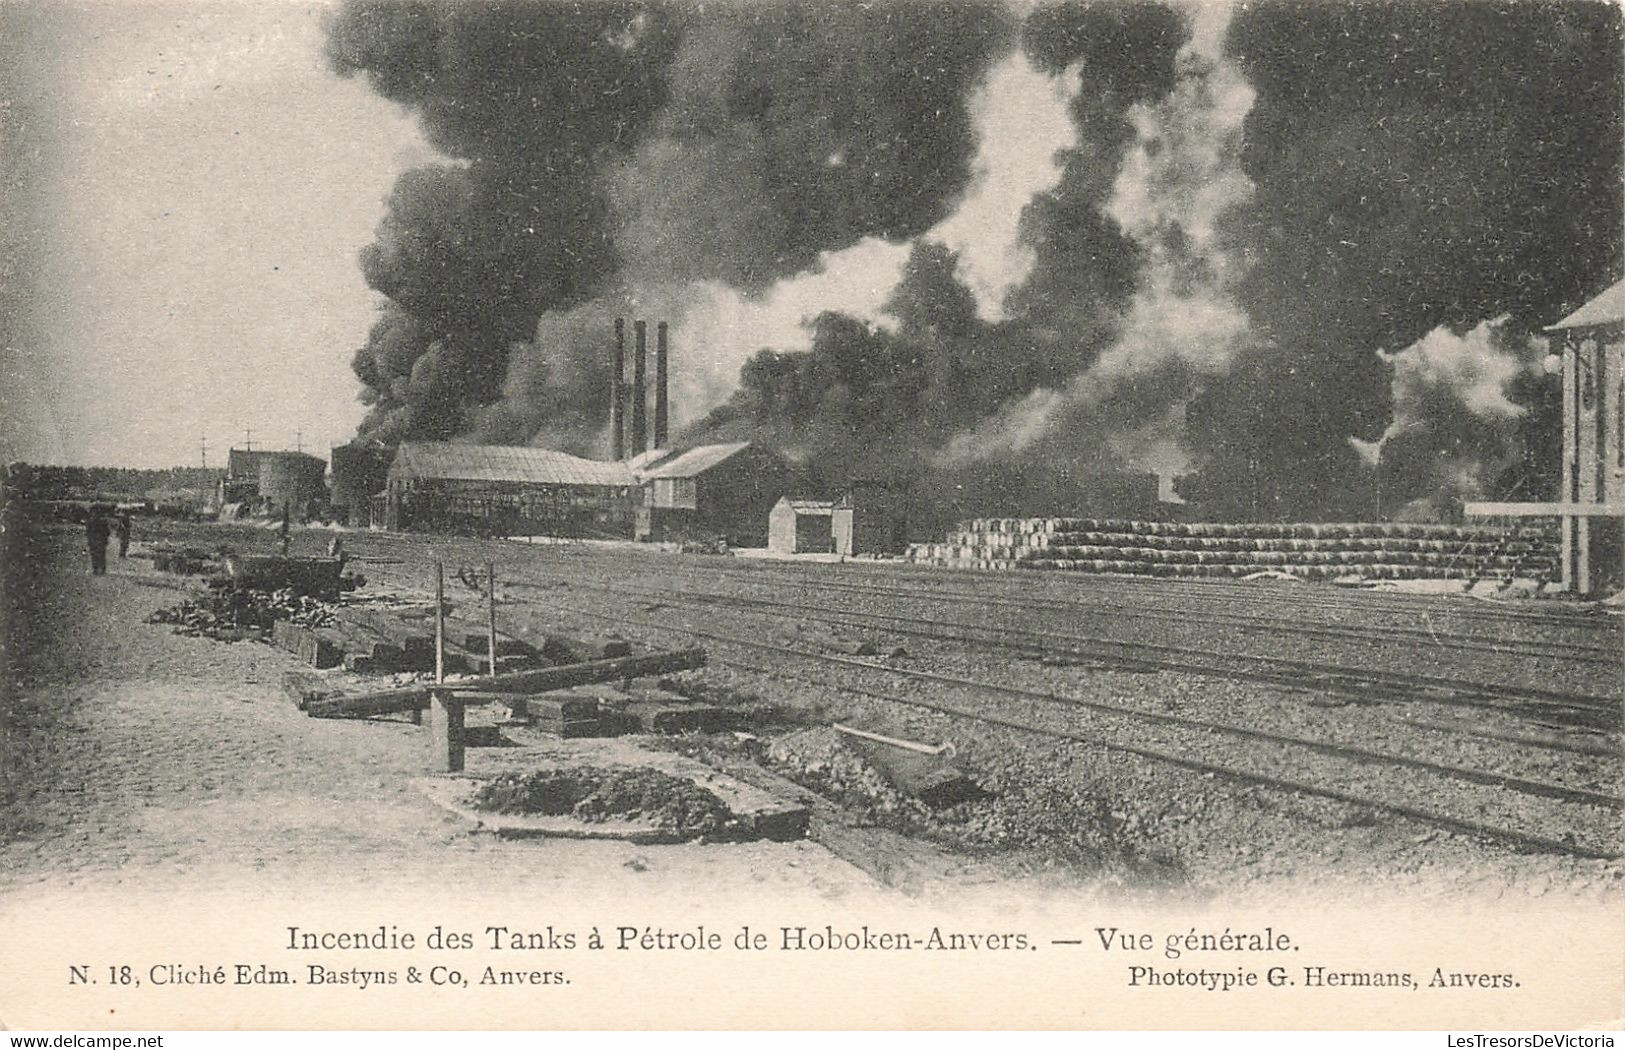 Lot de 11 cartes sur l'incendie des tanks à pétrole de Hoboken Anvers - Phototypie Hermans - Carte Postale Ancienne